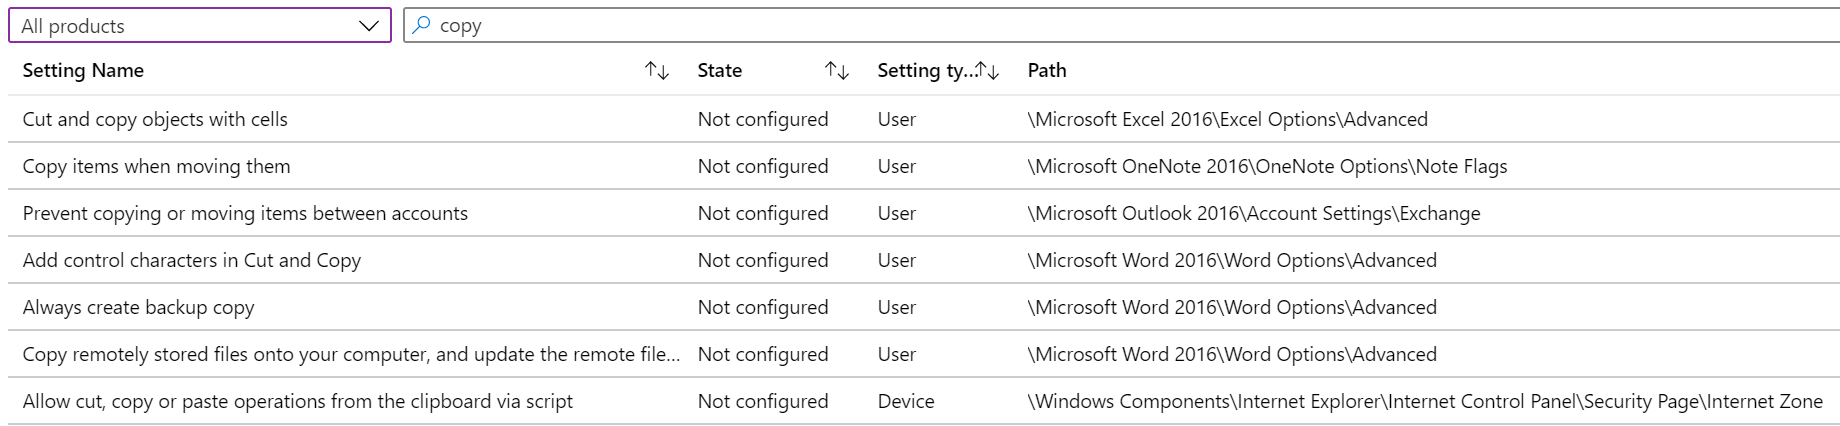 Pesquisa para copiar para mostrar todas as configurações do dispositivo em modelos administrativos em Microsoft Intune e Intune centro de administração.